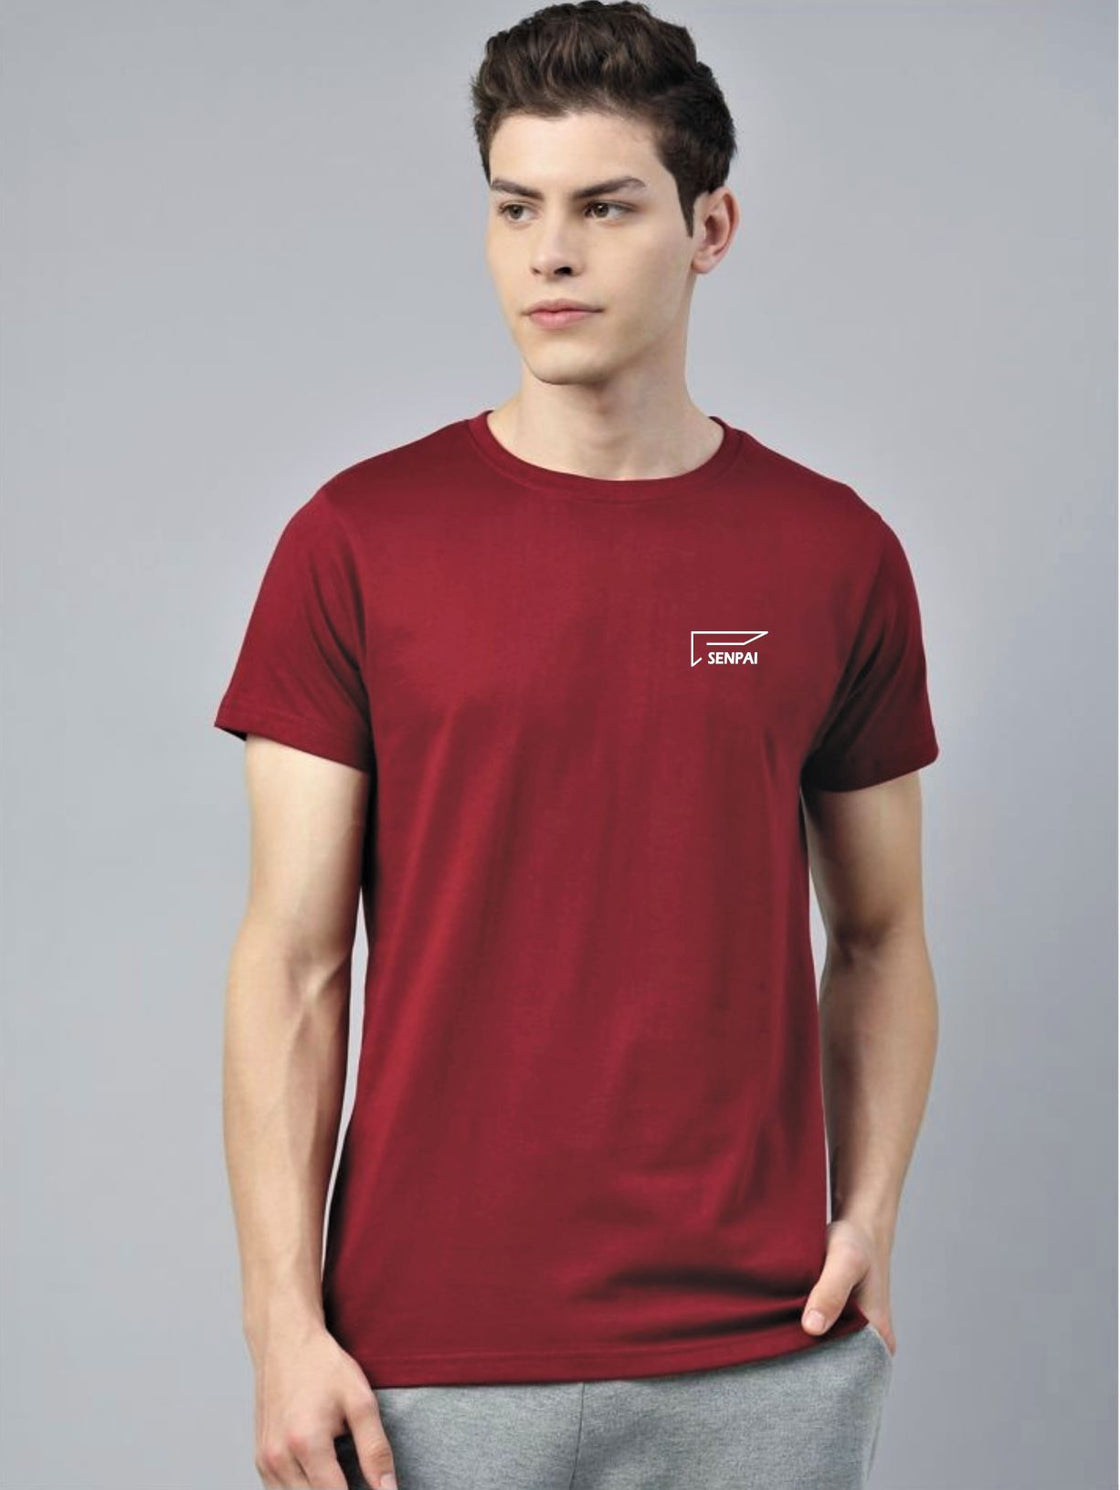 Men’s Sports Wear  Round Neck Maroon T-Shirt